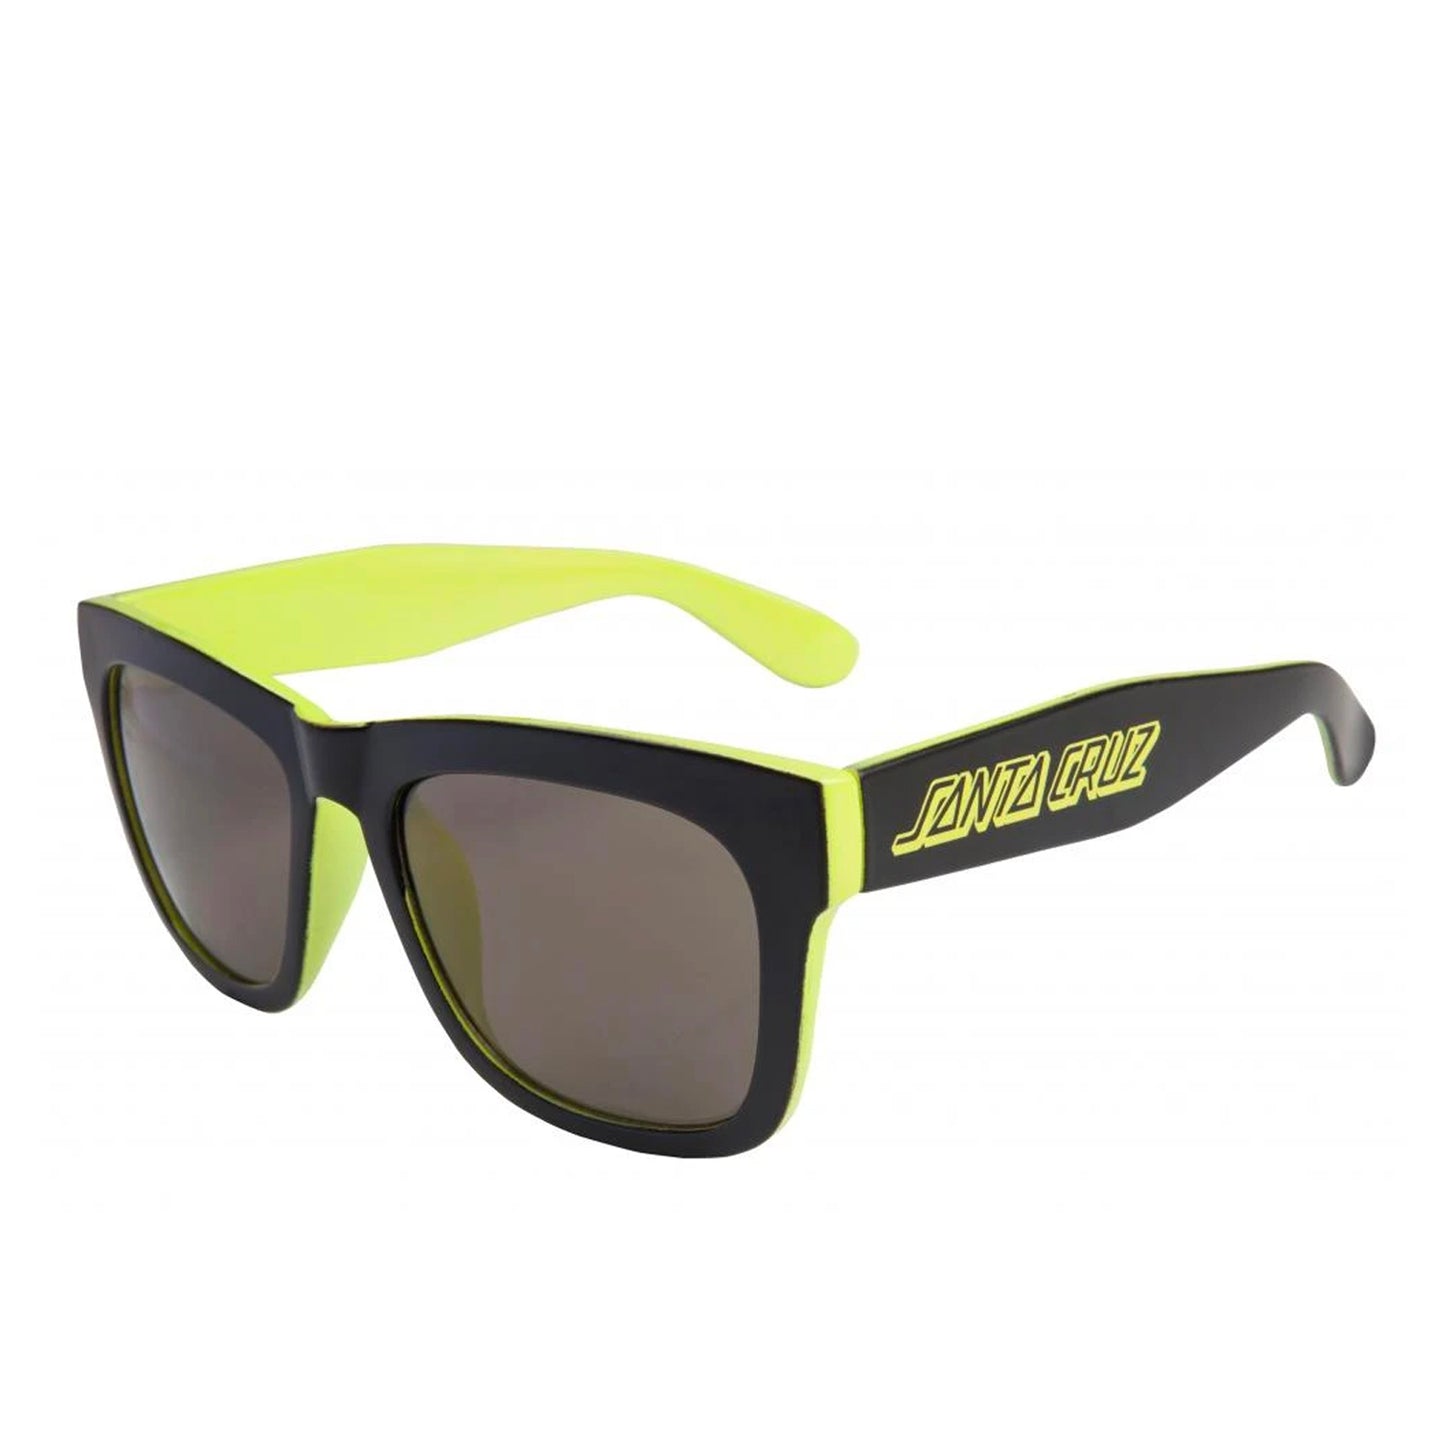 Santa Cruz Dazed Sunglasses - Black / Safety Green - Prime Delux Store